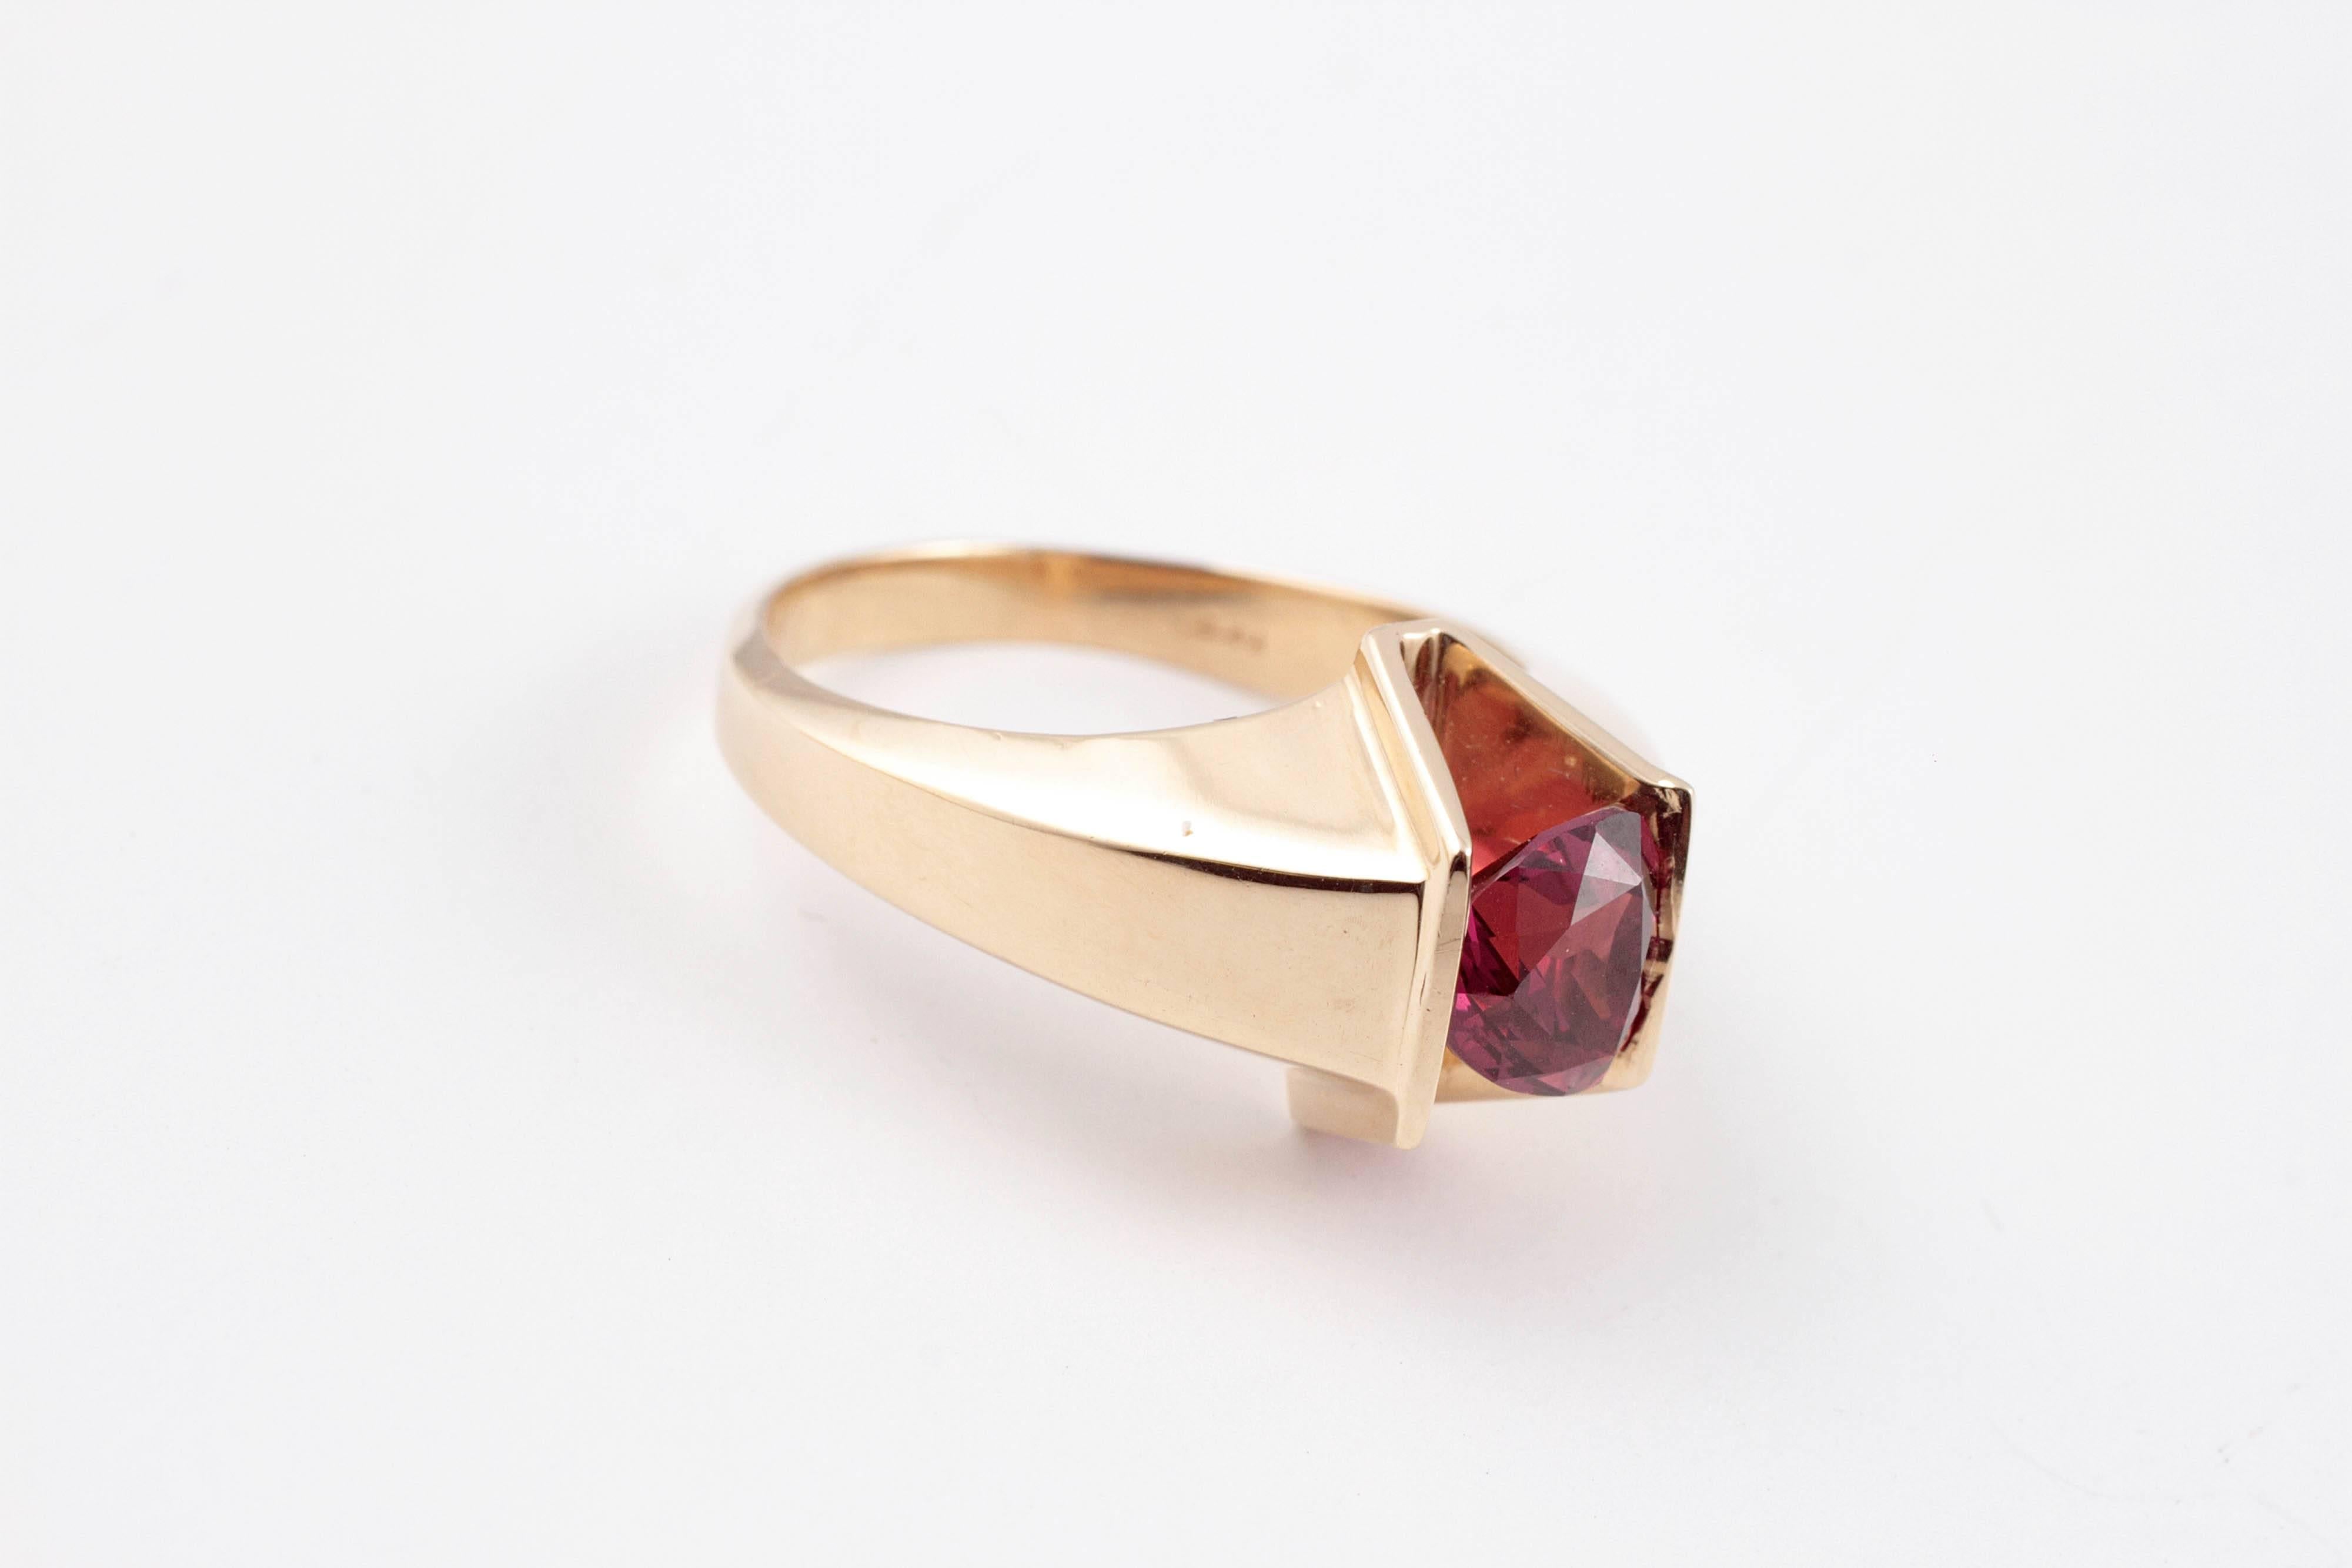 Trillion Cut Stunning 4.85 Carat Rhodolite Garnet Ring in 14 Karat Gold For Sale